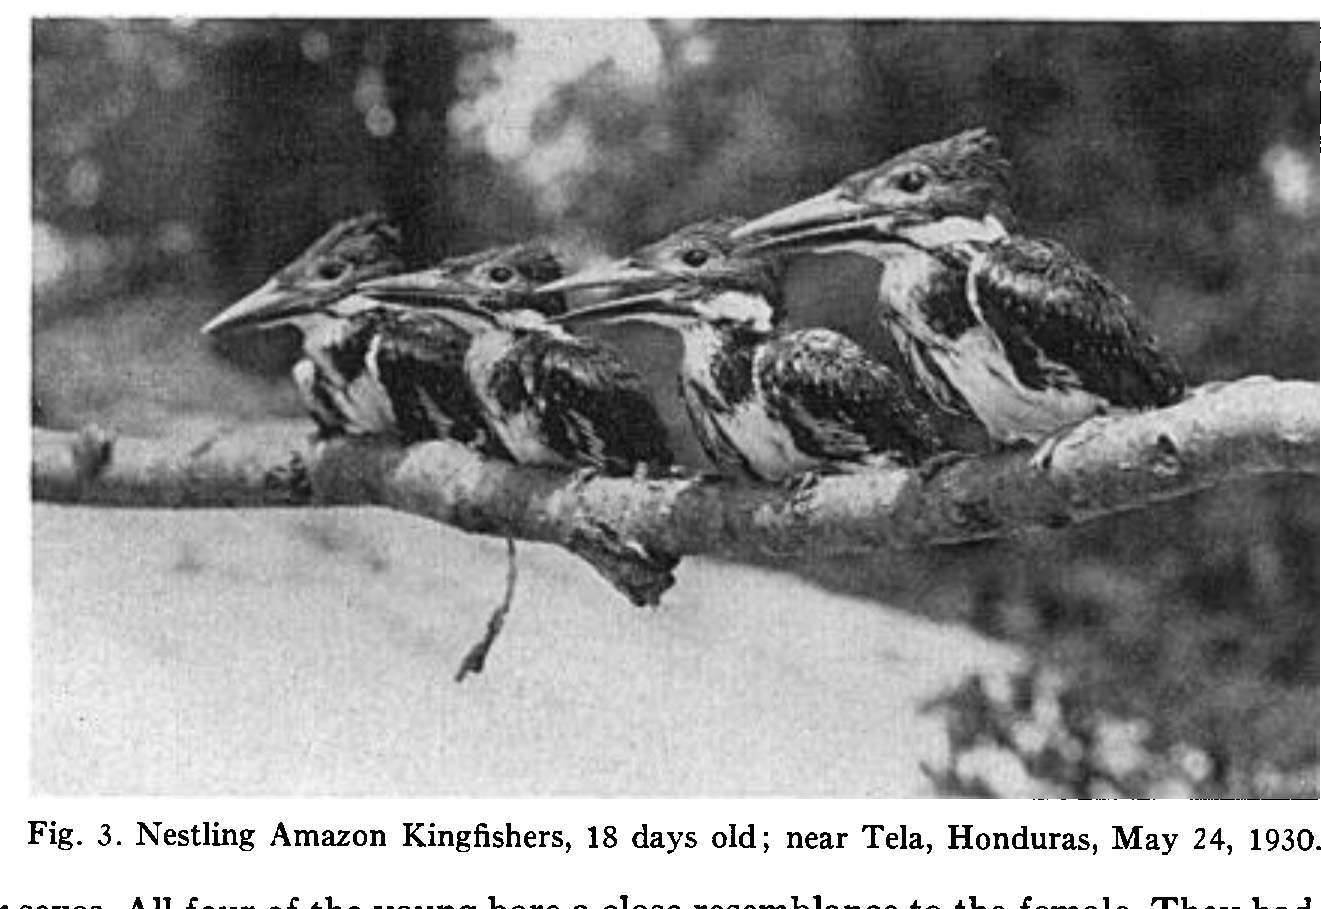  “Những chú chim non ngây thơ ở trường mẫu giáo”: Ảnh trong bài nghiên cứu của A. F. Skutch trên The Condor [1].